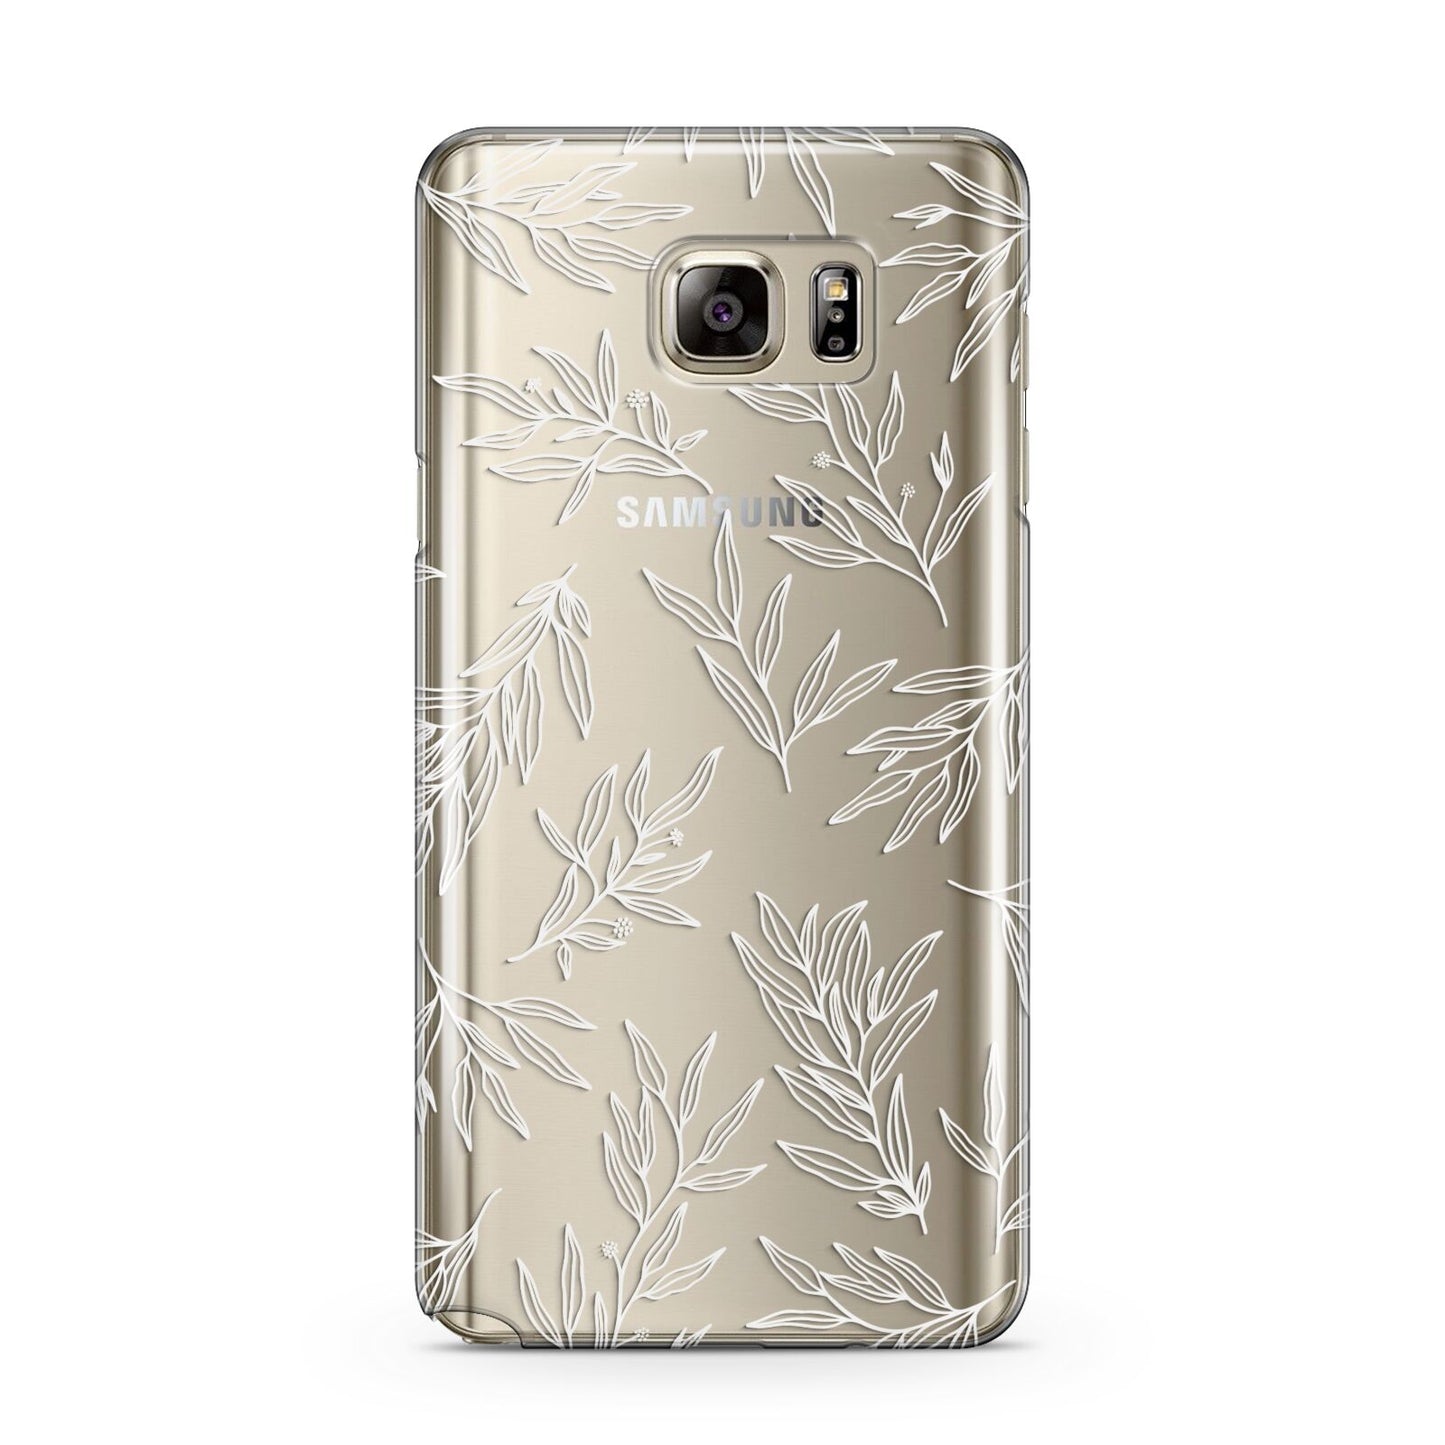 Botanical Leaf Samsung Galaxy Note 5 Case